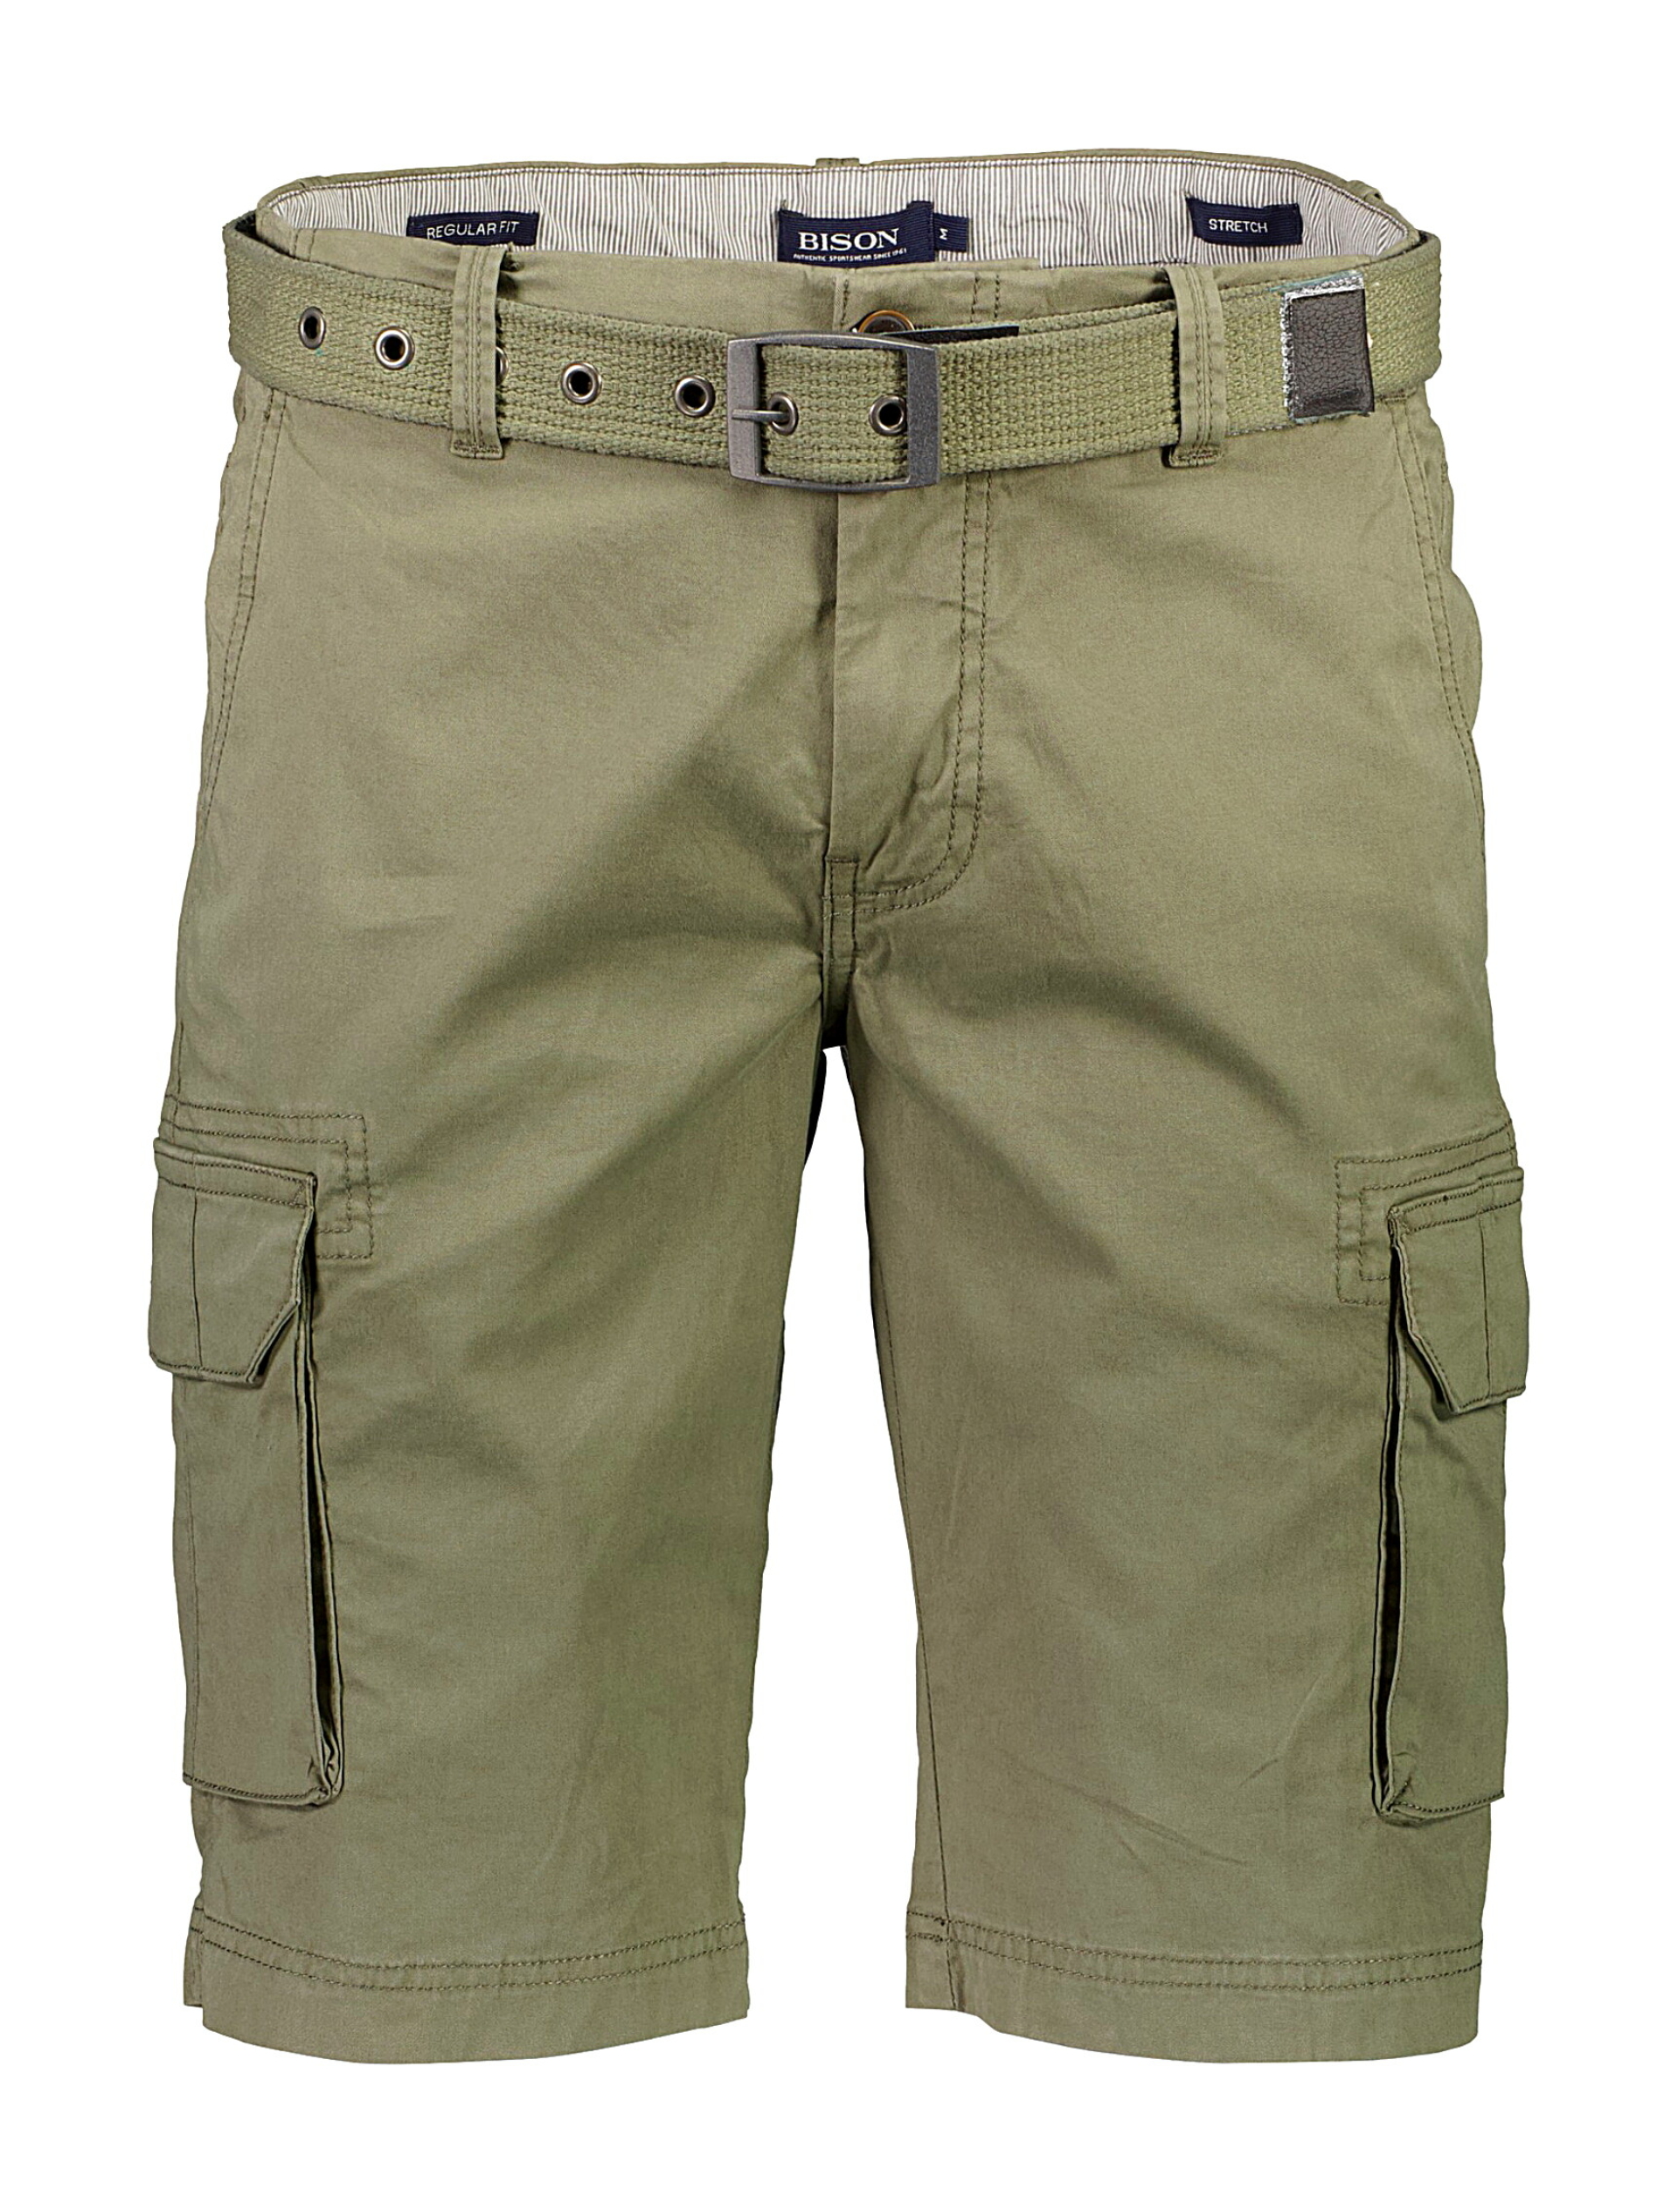 Bison Cargo shorts grøn / army